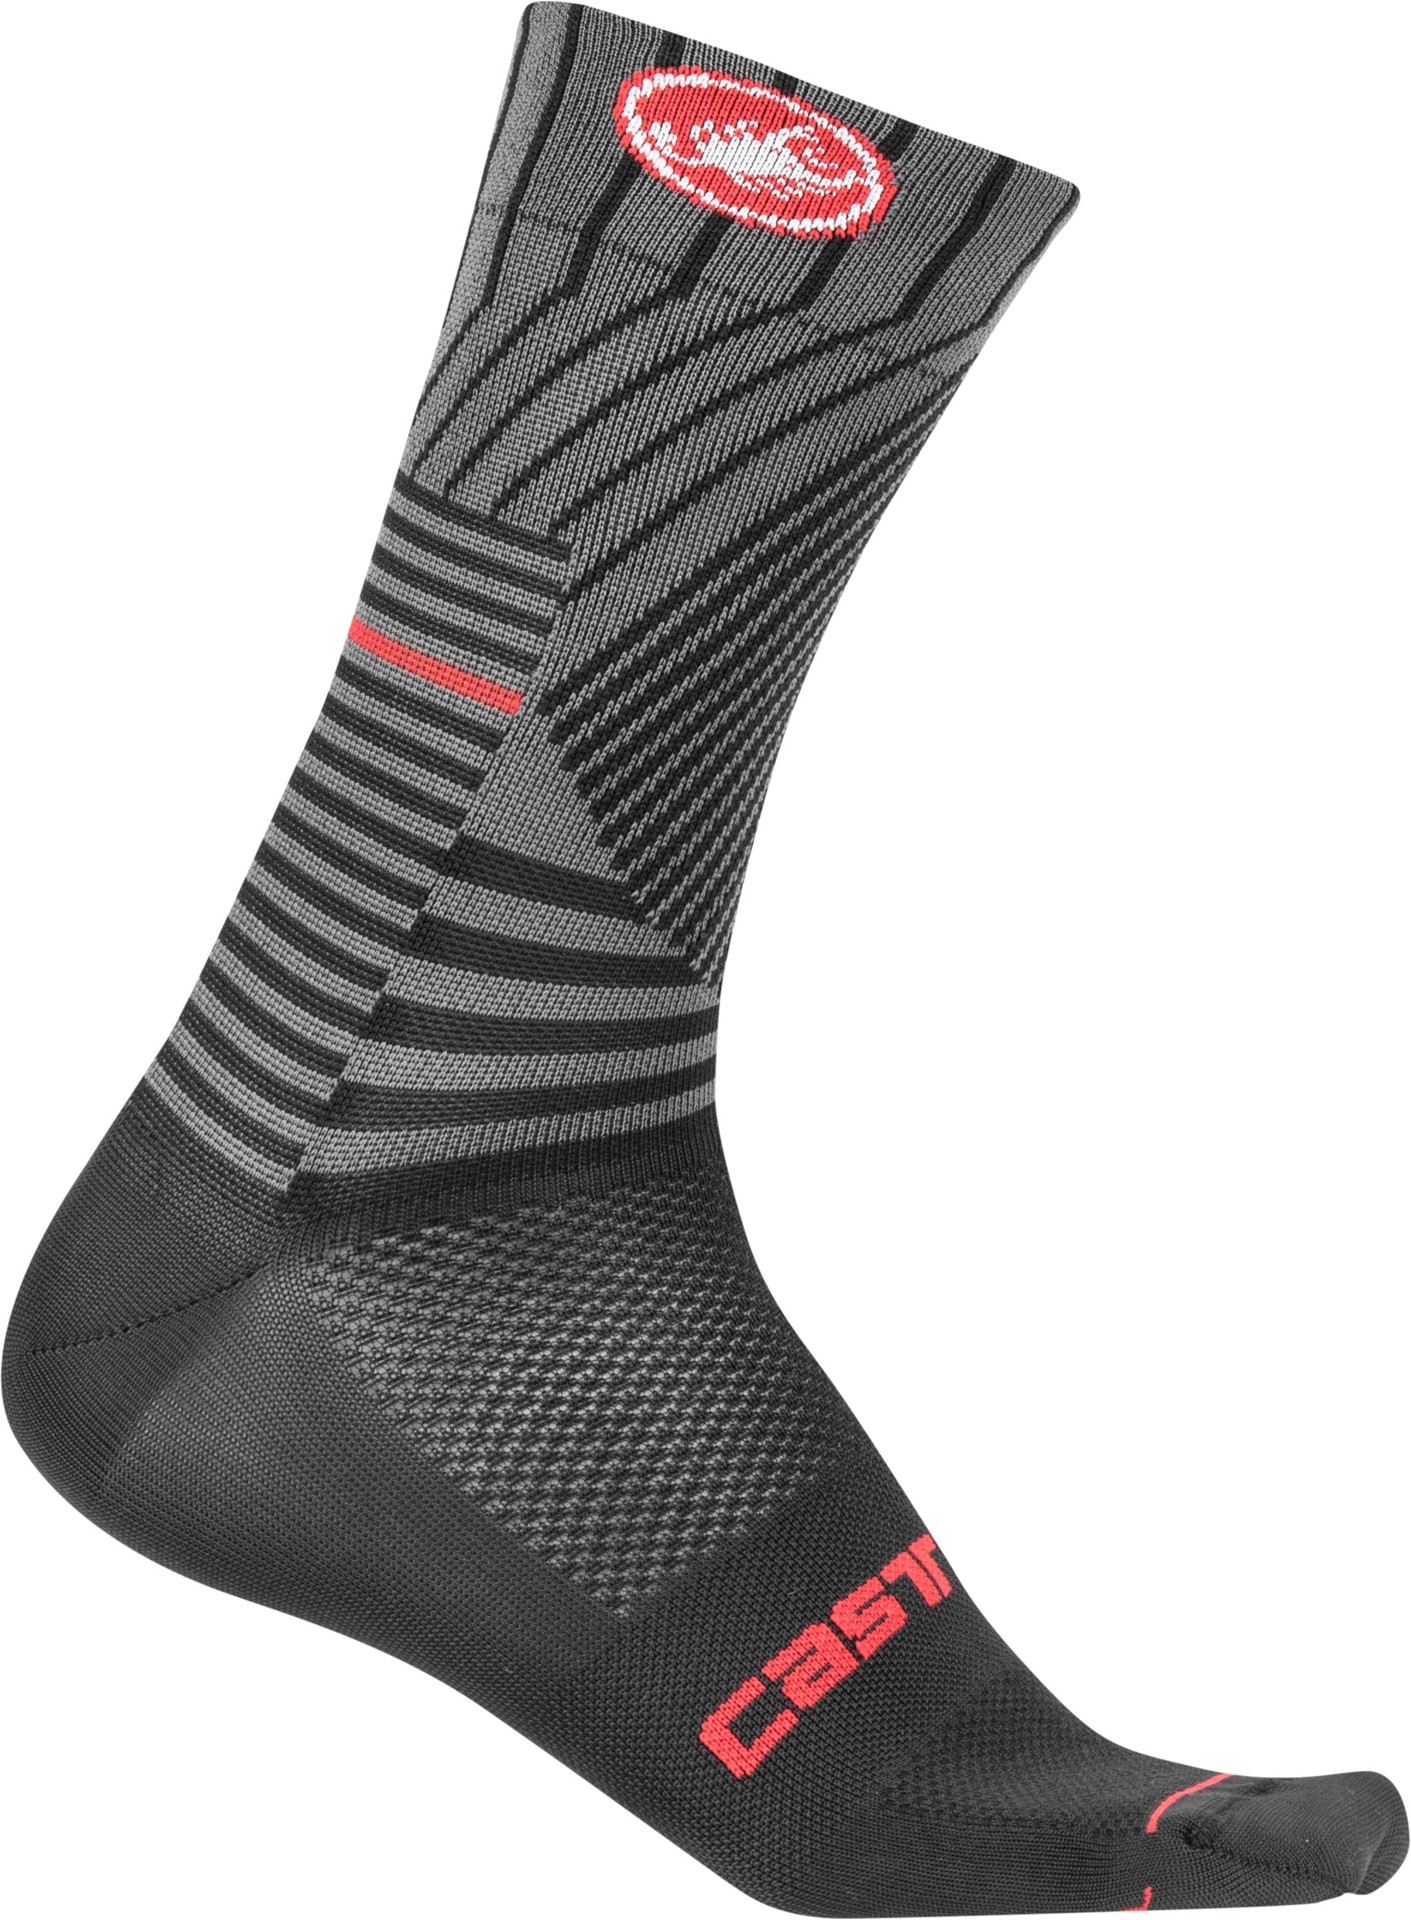 Castelli pro mesh 15 chaussures de cyclisme noir rouge